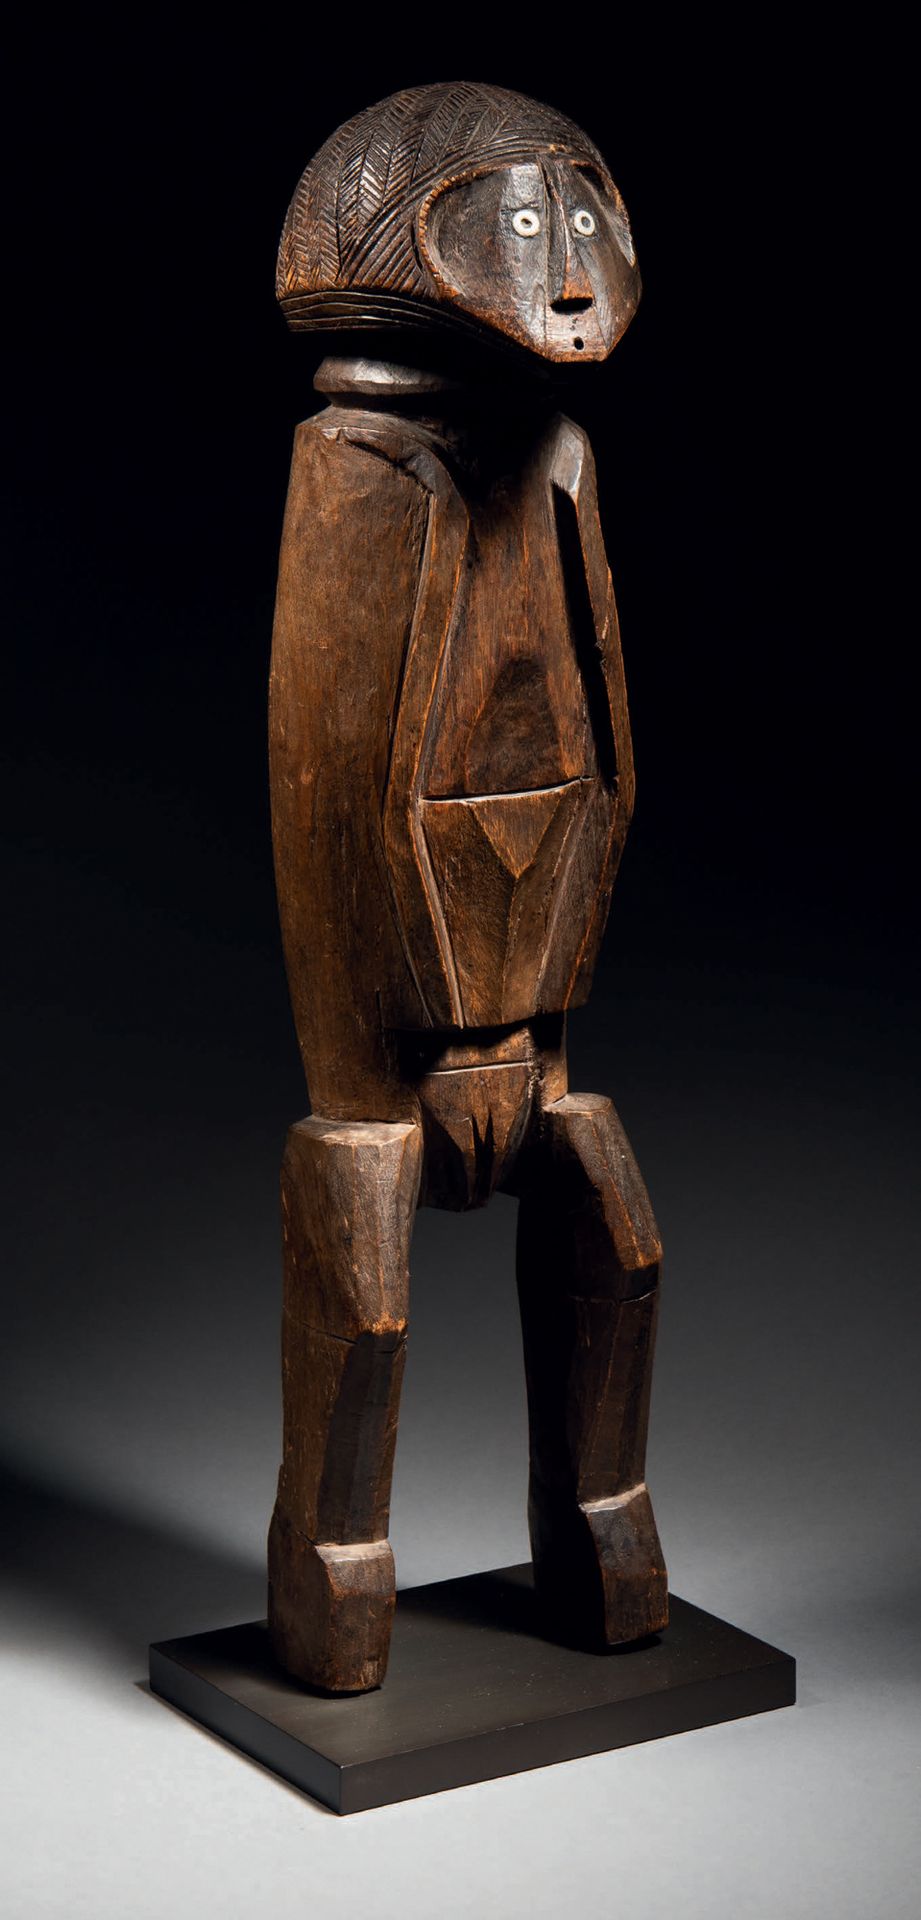 Null Ɵ 班达雕像，Mobaye地区，中非共和国
19世纪末
木质，有深棕色的铜锈和使用痕迹，骨质（？）镶嵌
高41厘米
班达图，Mobaye地区，非洲中部&hellip;